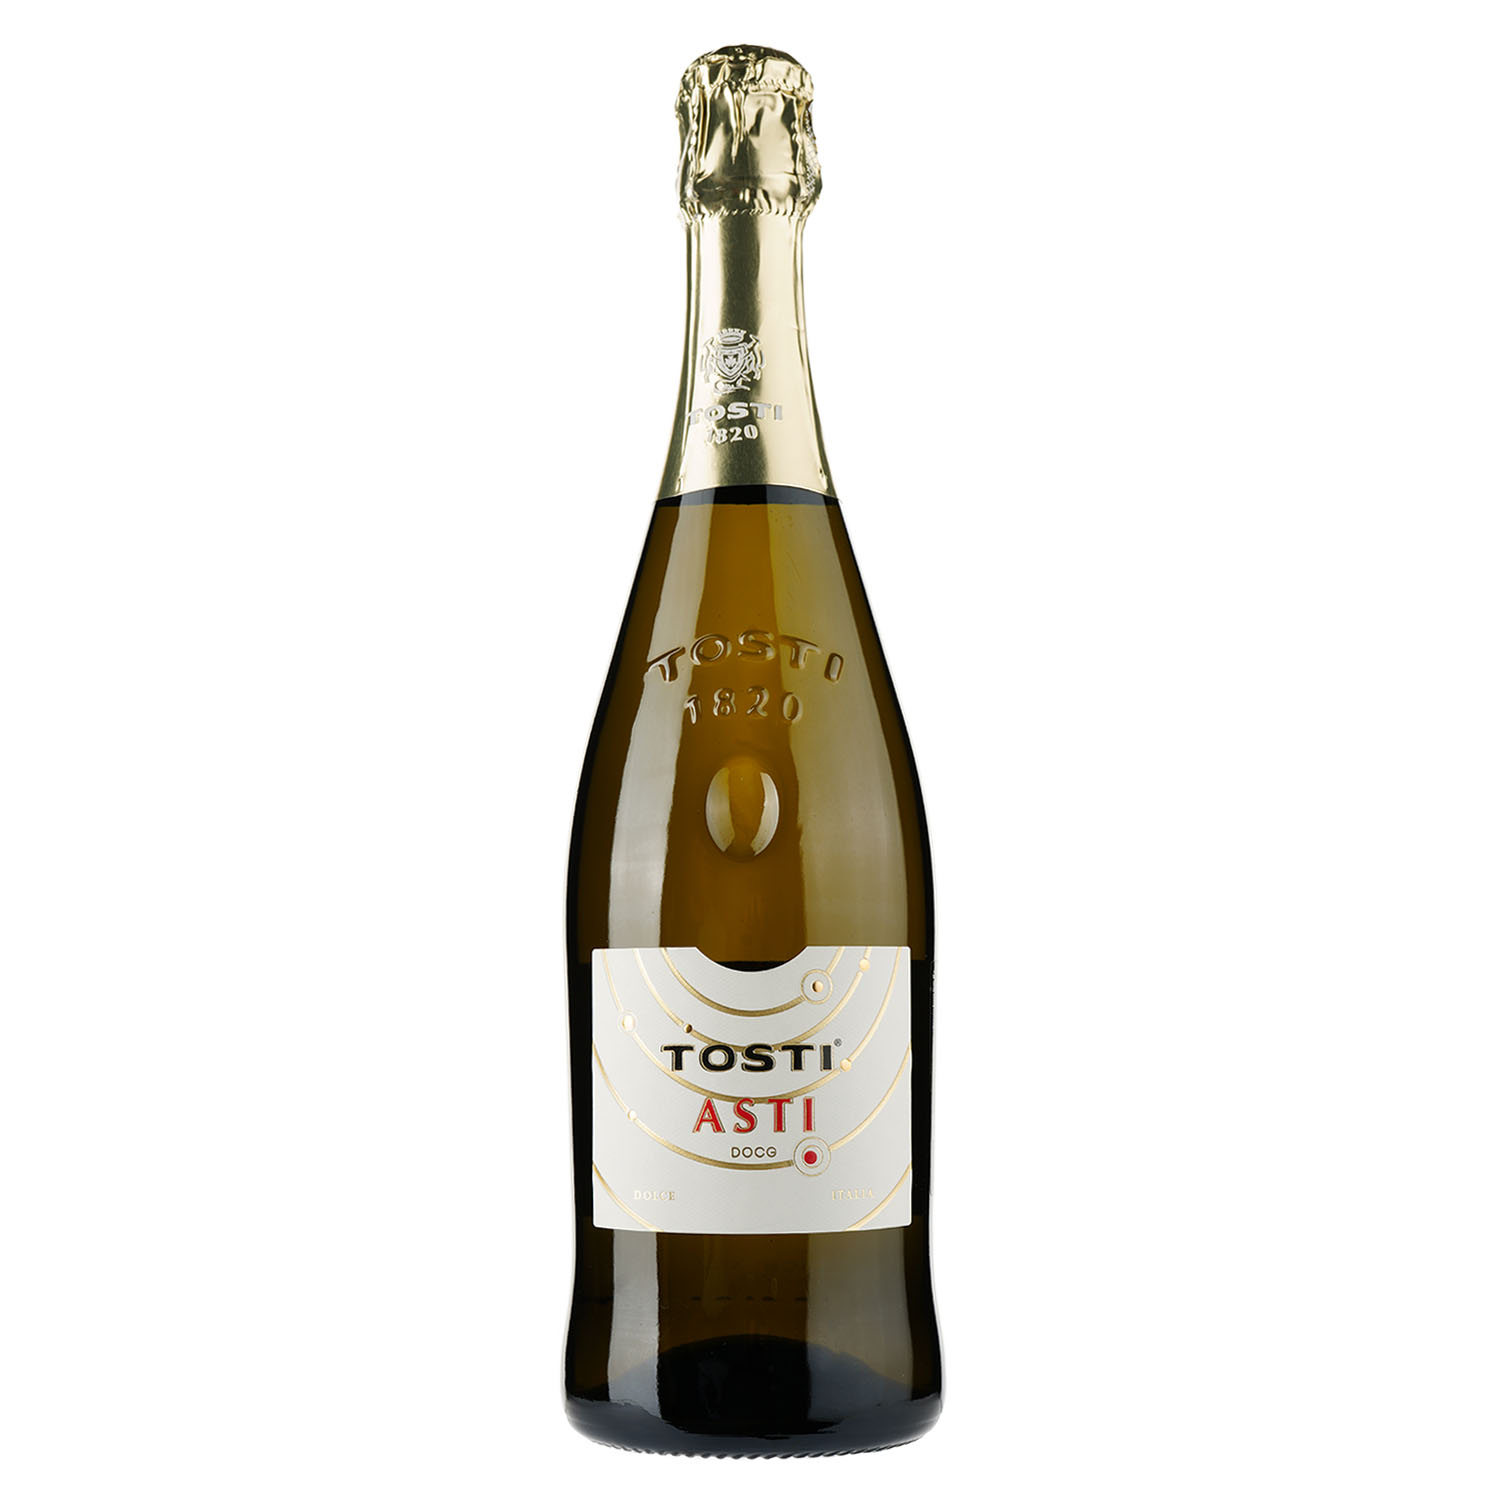 Игристое вино Tosti Asti DOCG, белое, сладкое, 7,5%, 0,75 л - фото 1